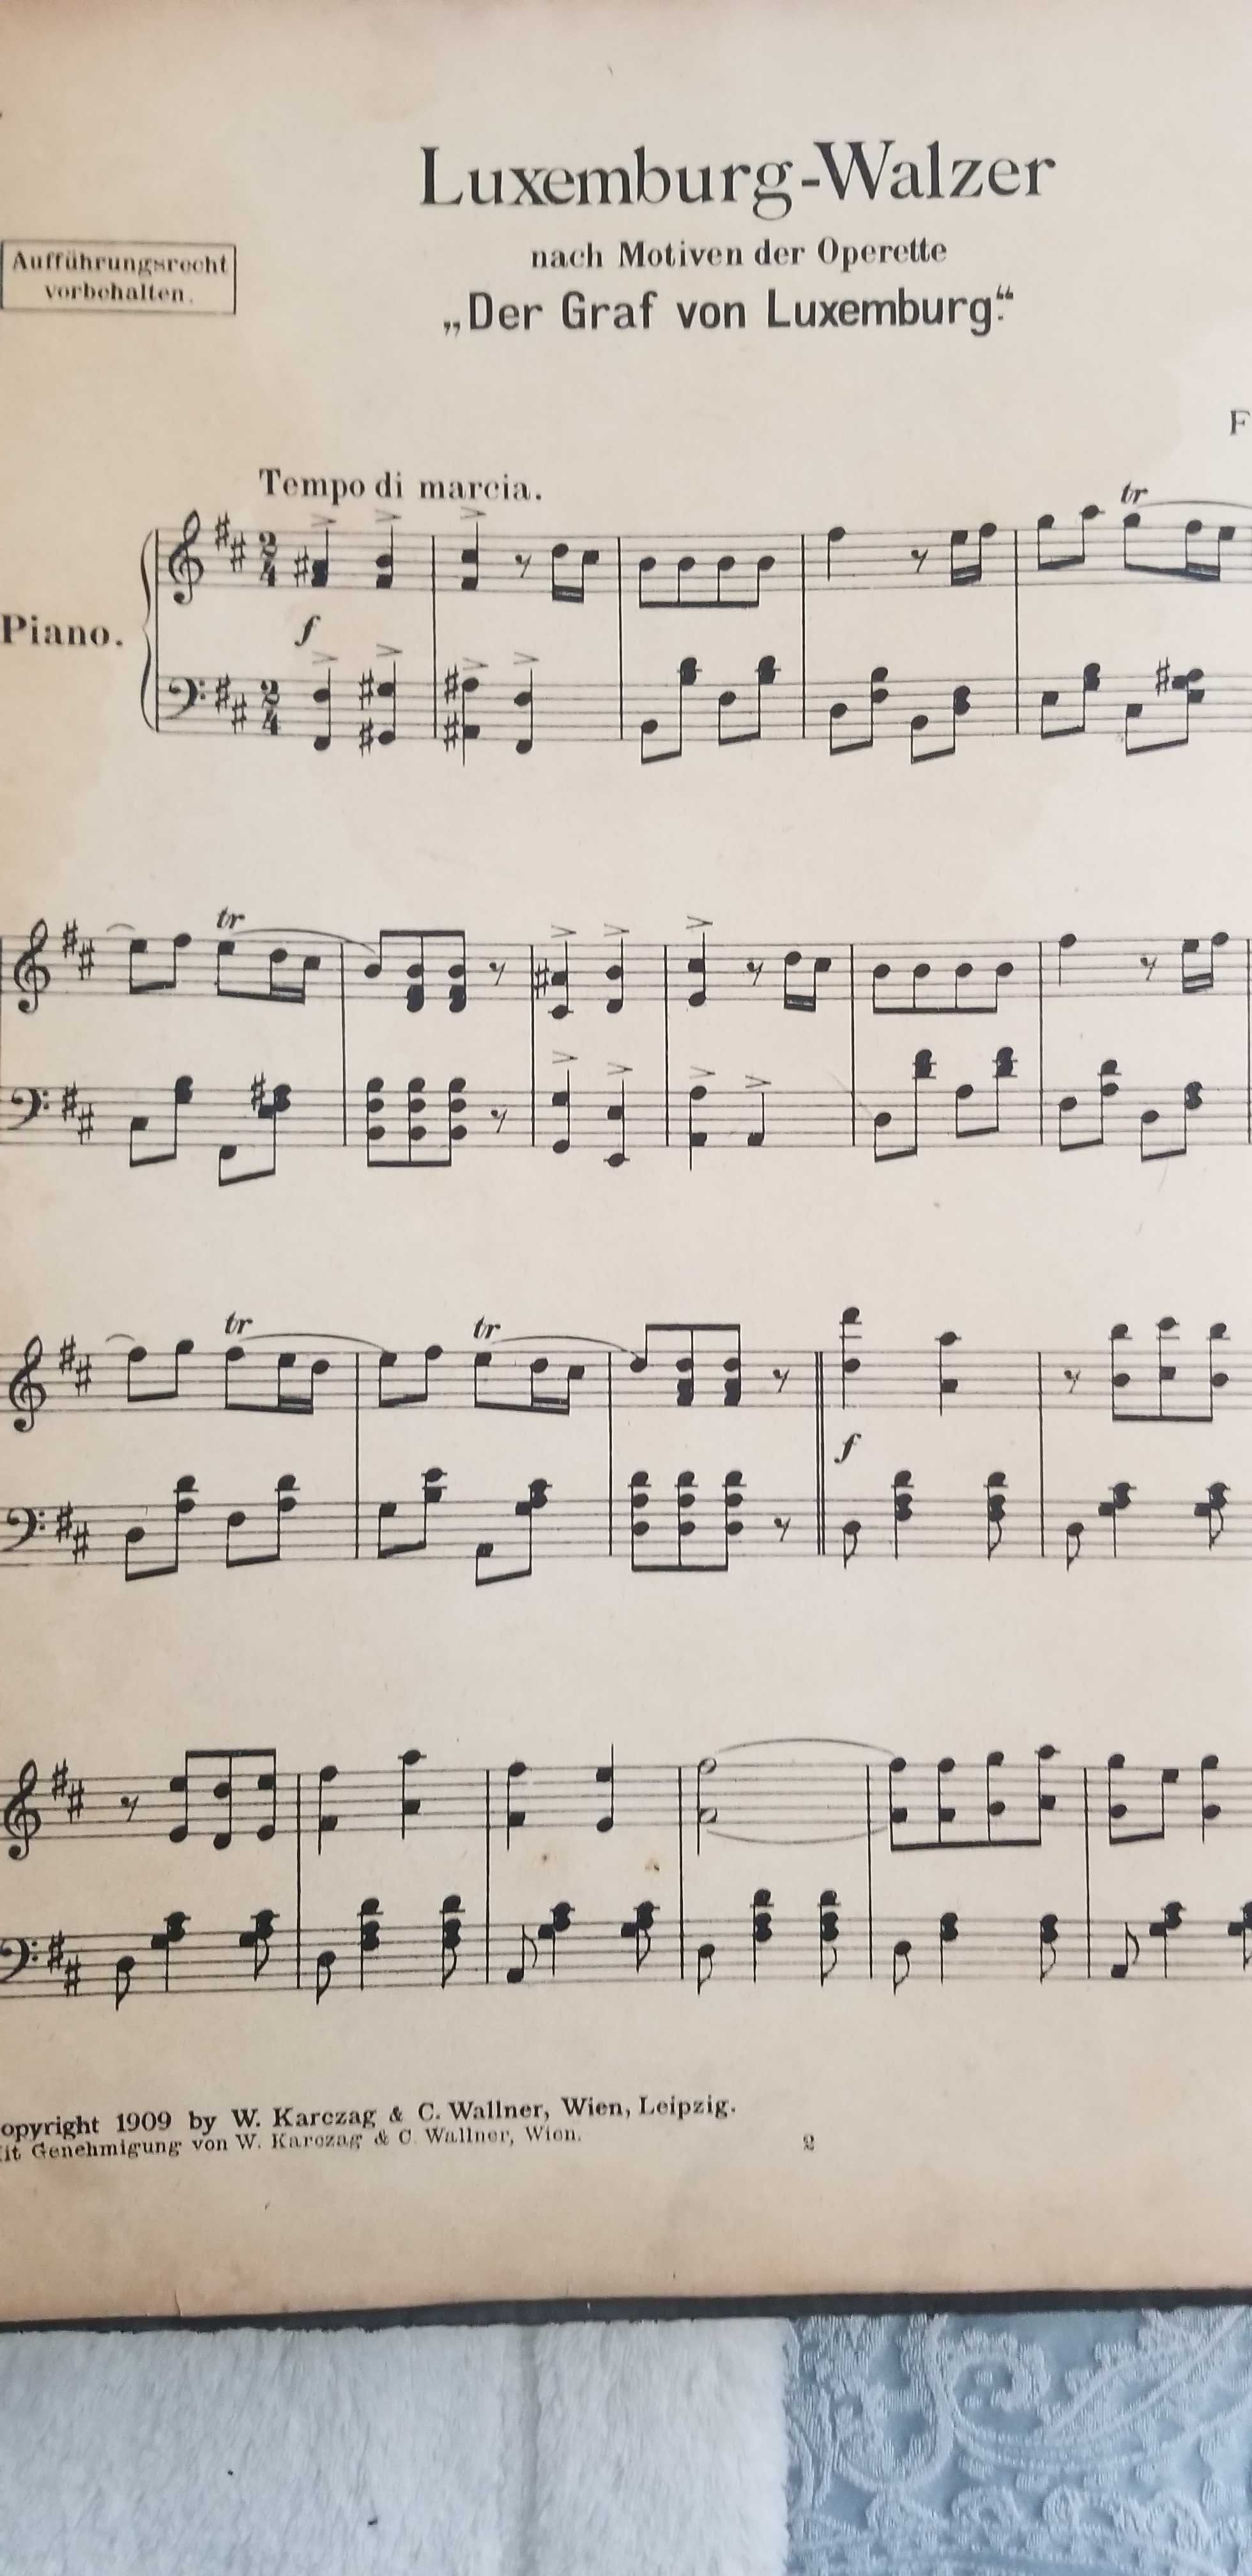 Musikalifche Edelsteine Band 2  -- 42 utwory na fortepian  nut z 1909r